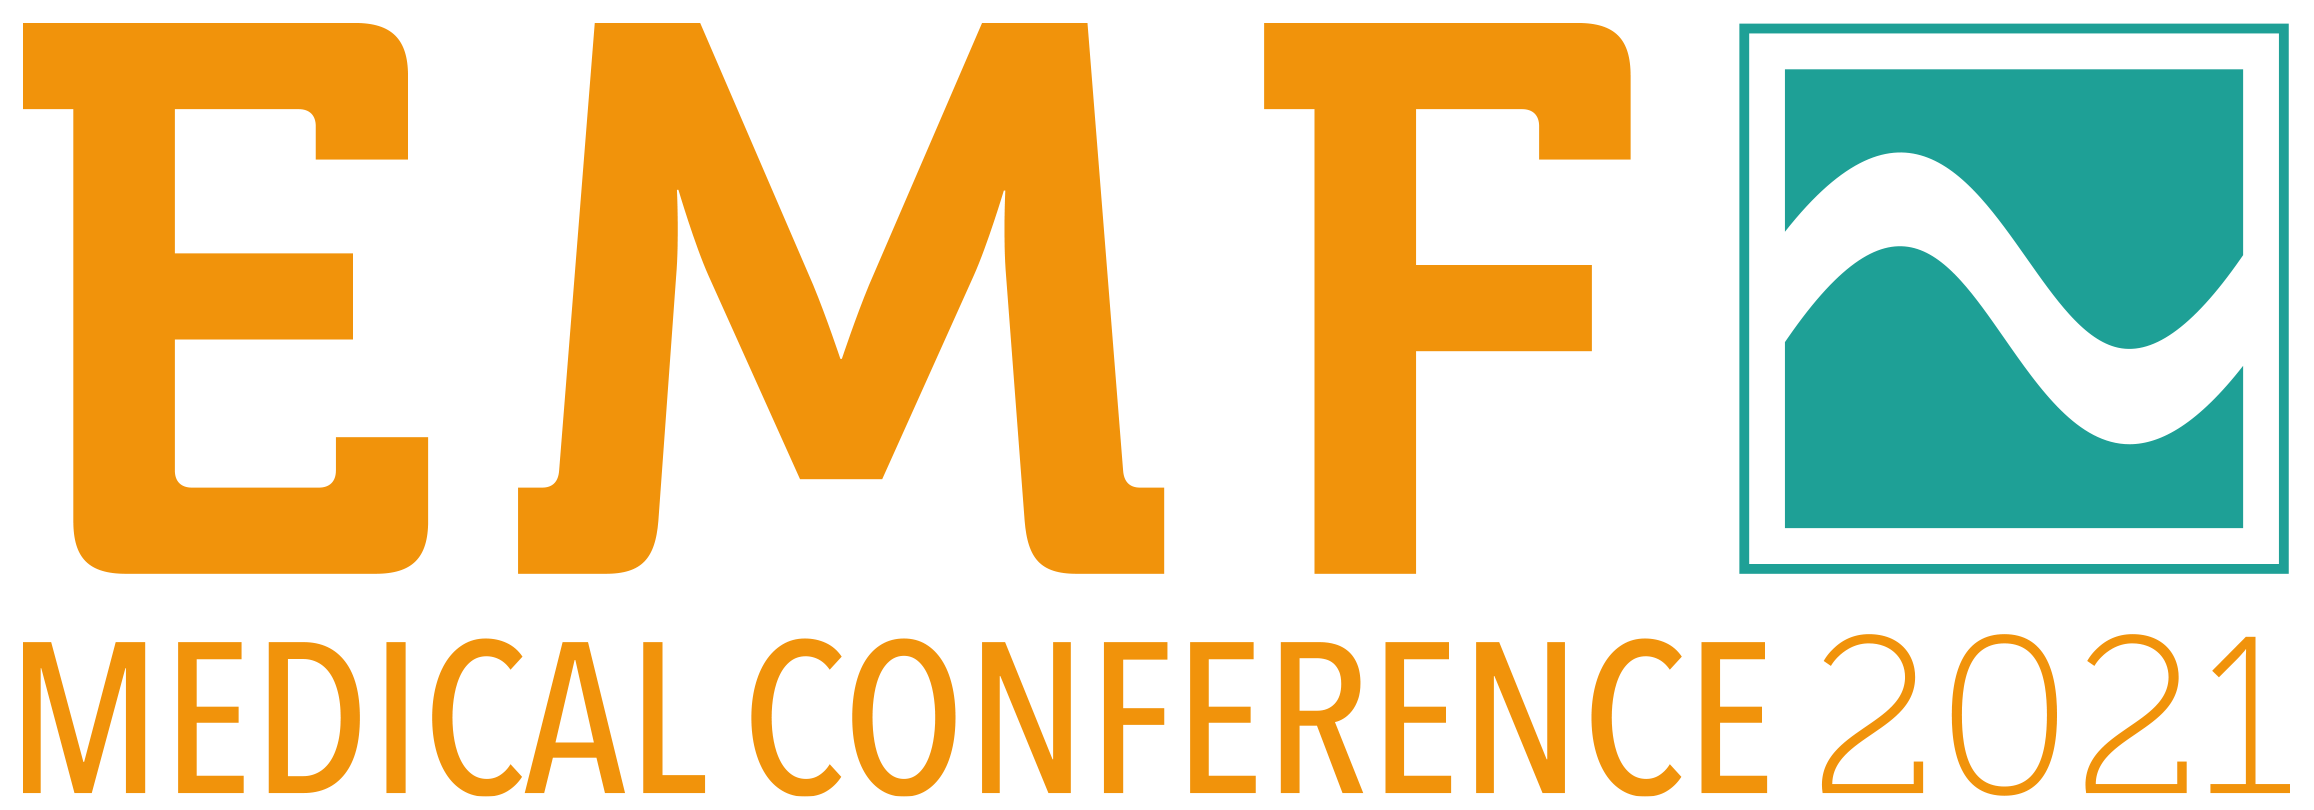 The EMF Medical Conference 2021